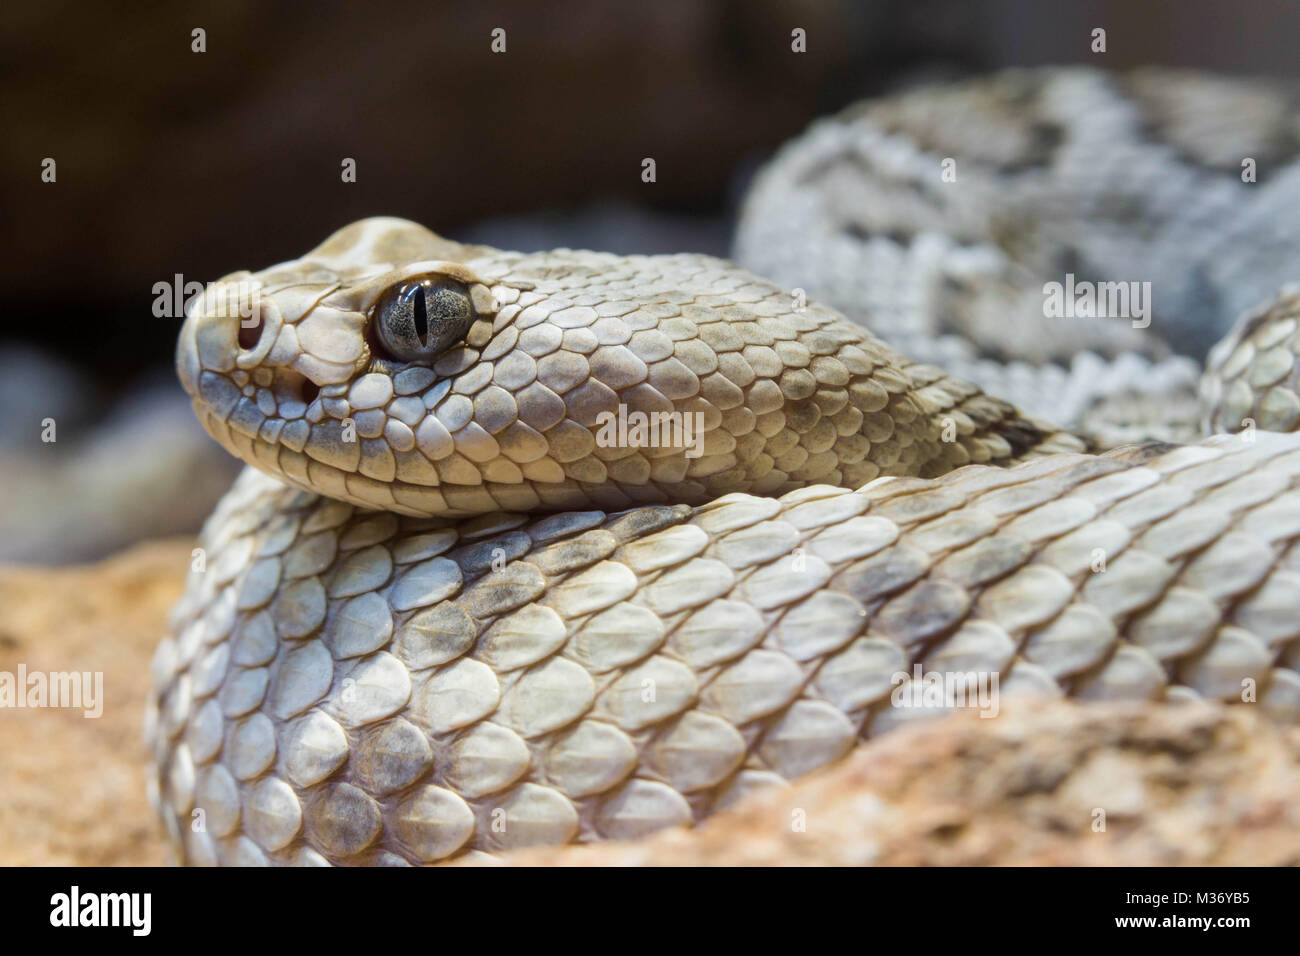 close up view of a Santa Catalina rattlesnake Stock Photo